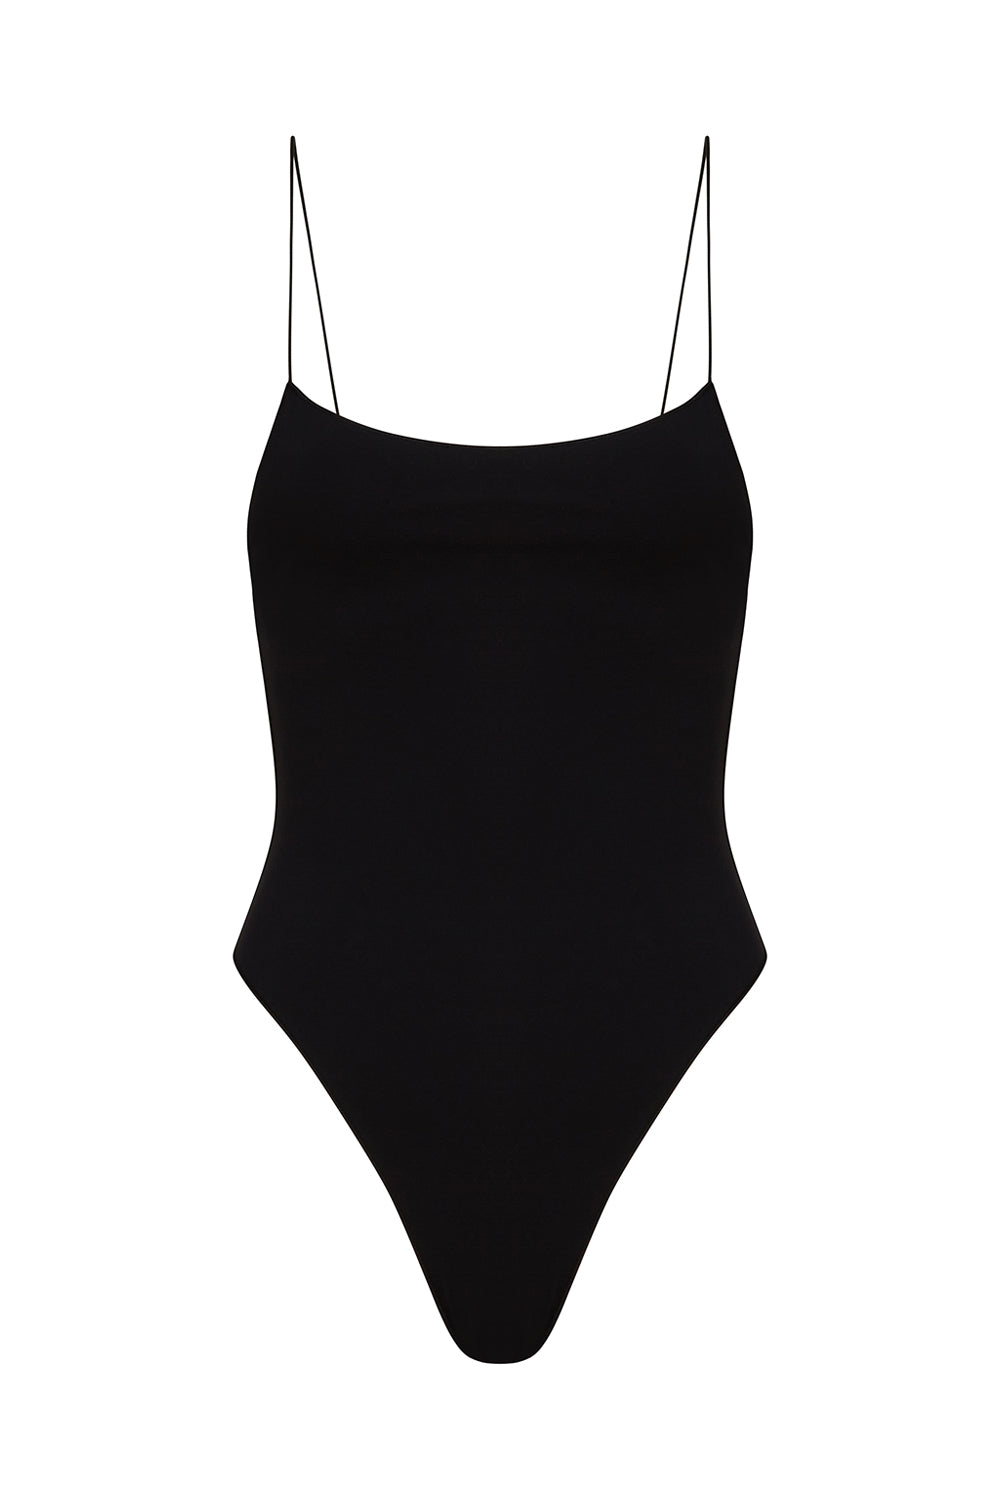 The Eco C Black Swimsuit